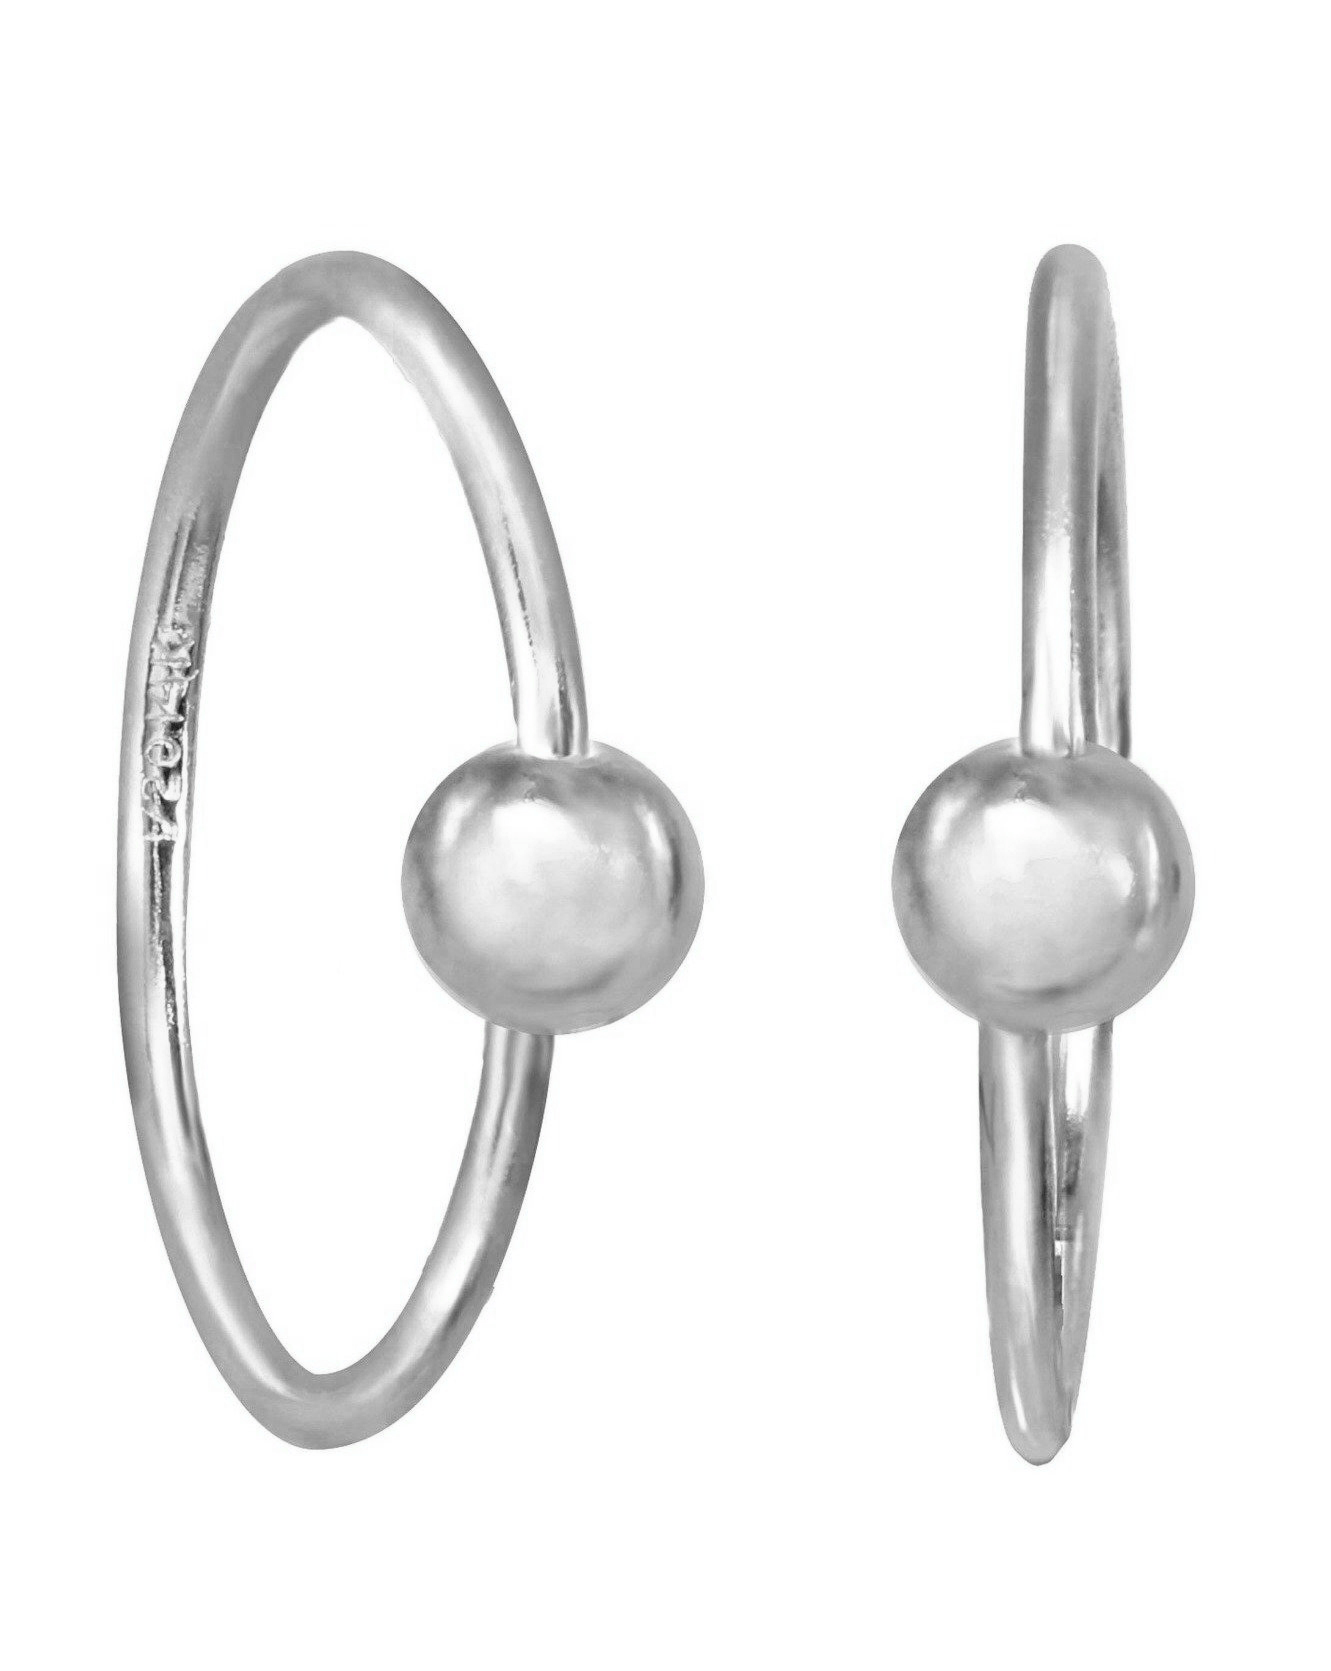 Harlie Hoop Earrings by KOZAKH. 12mm snap hoop earrings, crafted in Sterling Silver.